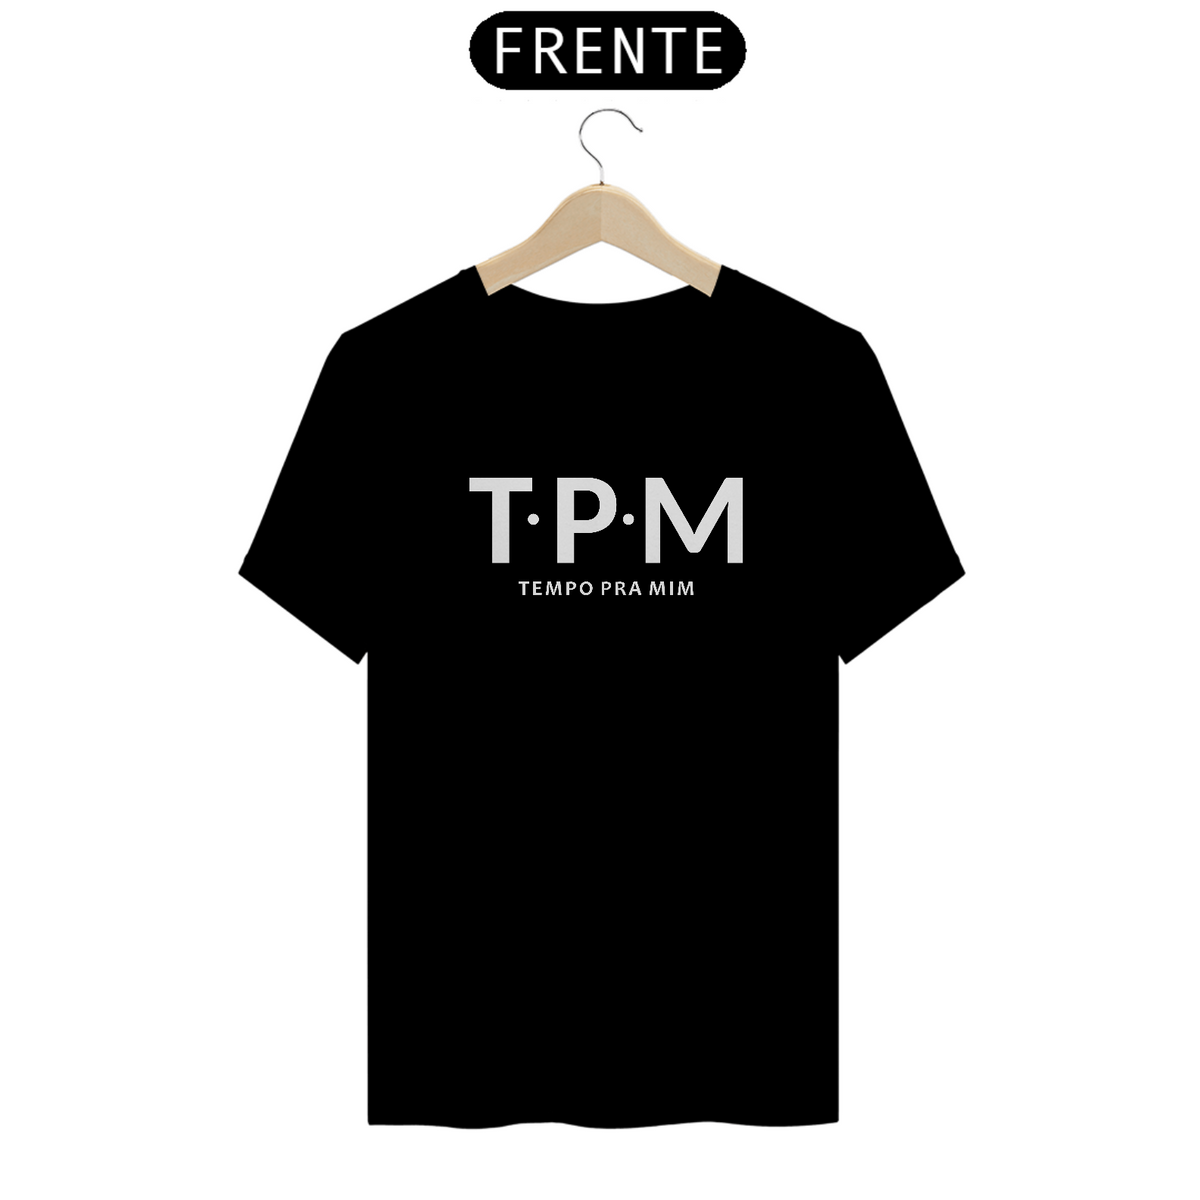 Nome do produto: TPM- Tempo pra mim